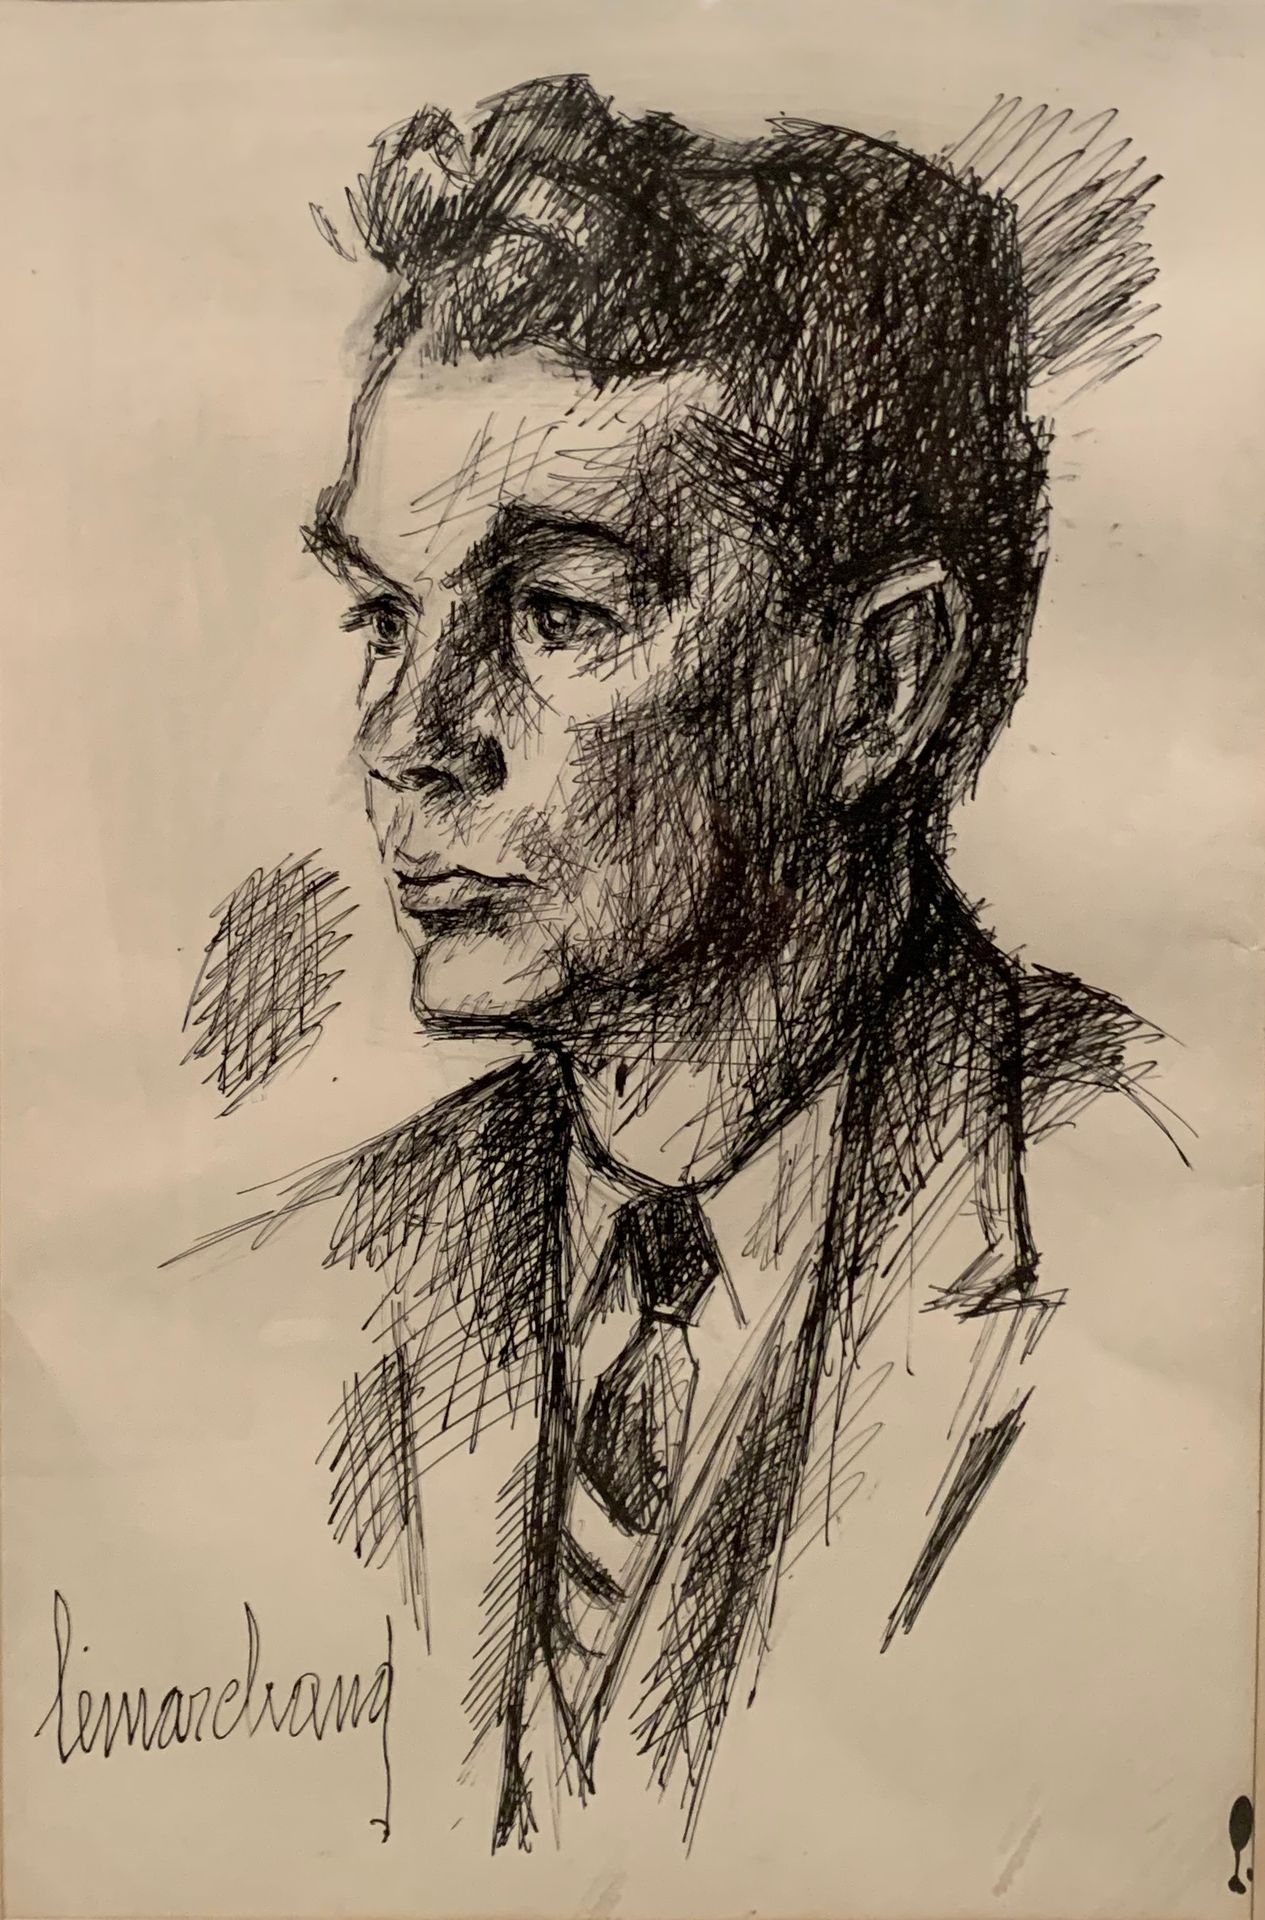 Null 皮埃尔-莱马赫德 (1906-1970)

男子半身像

左下角有水墨签名

49 x 32 厘米。